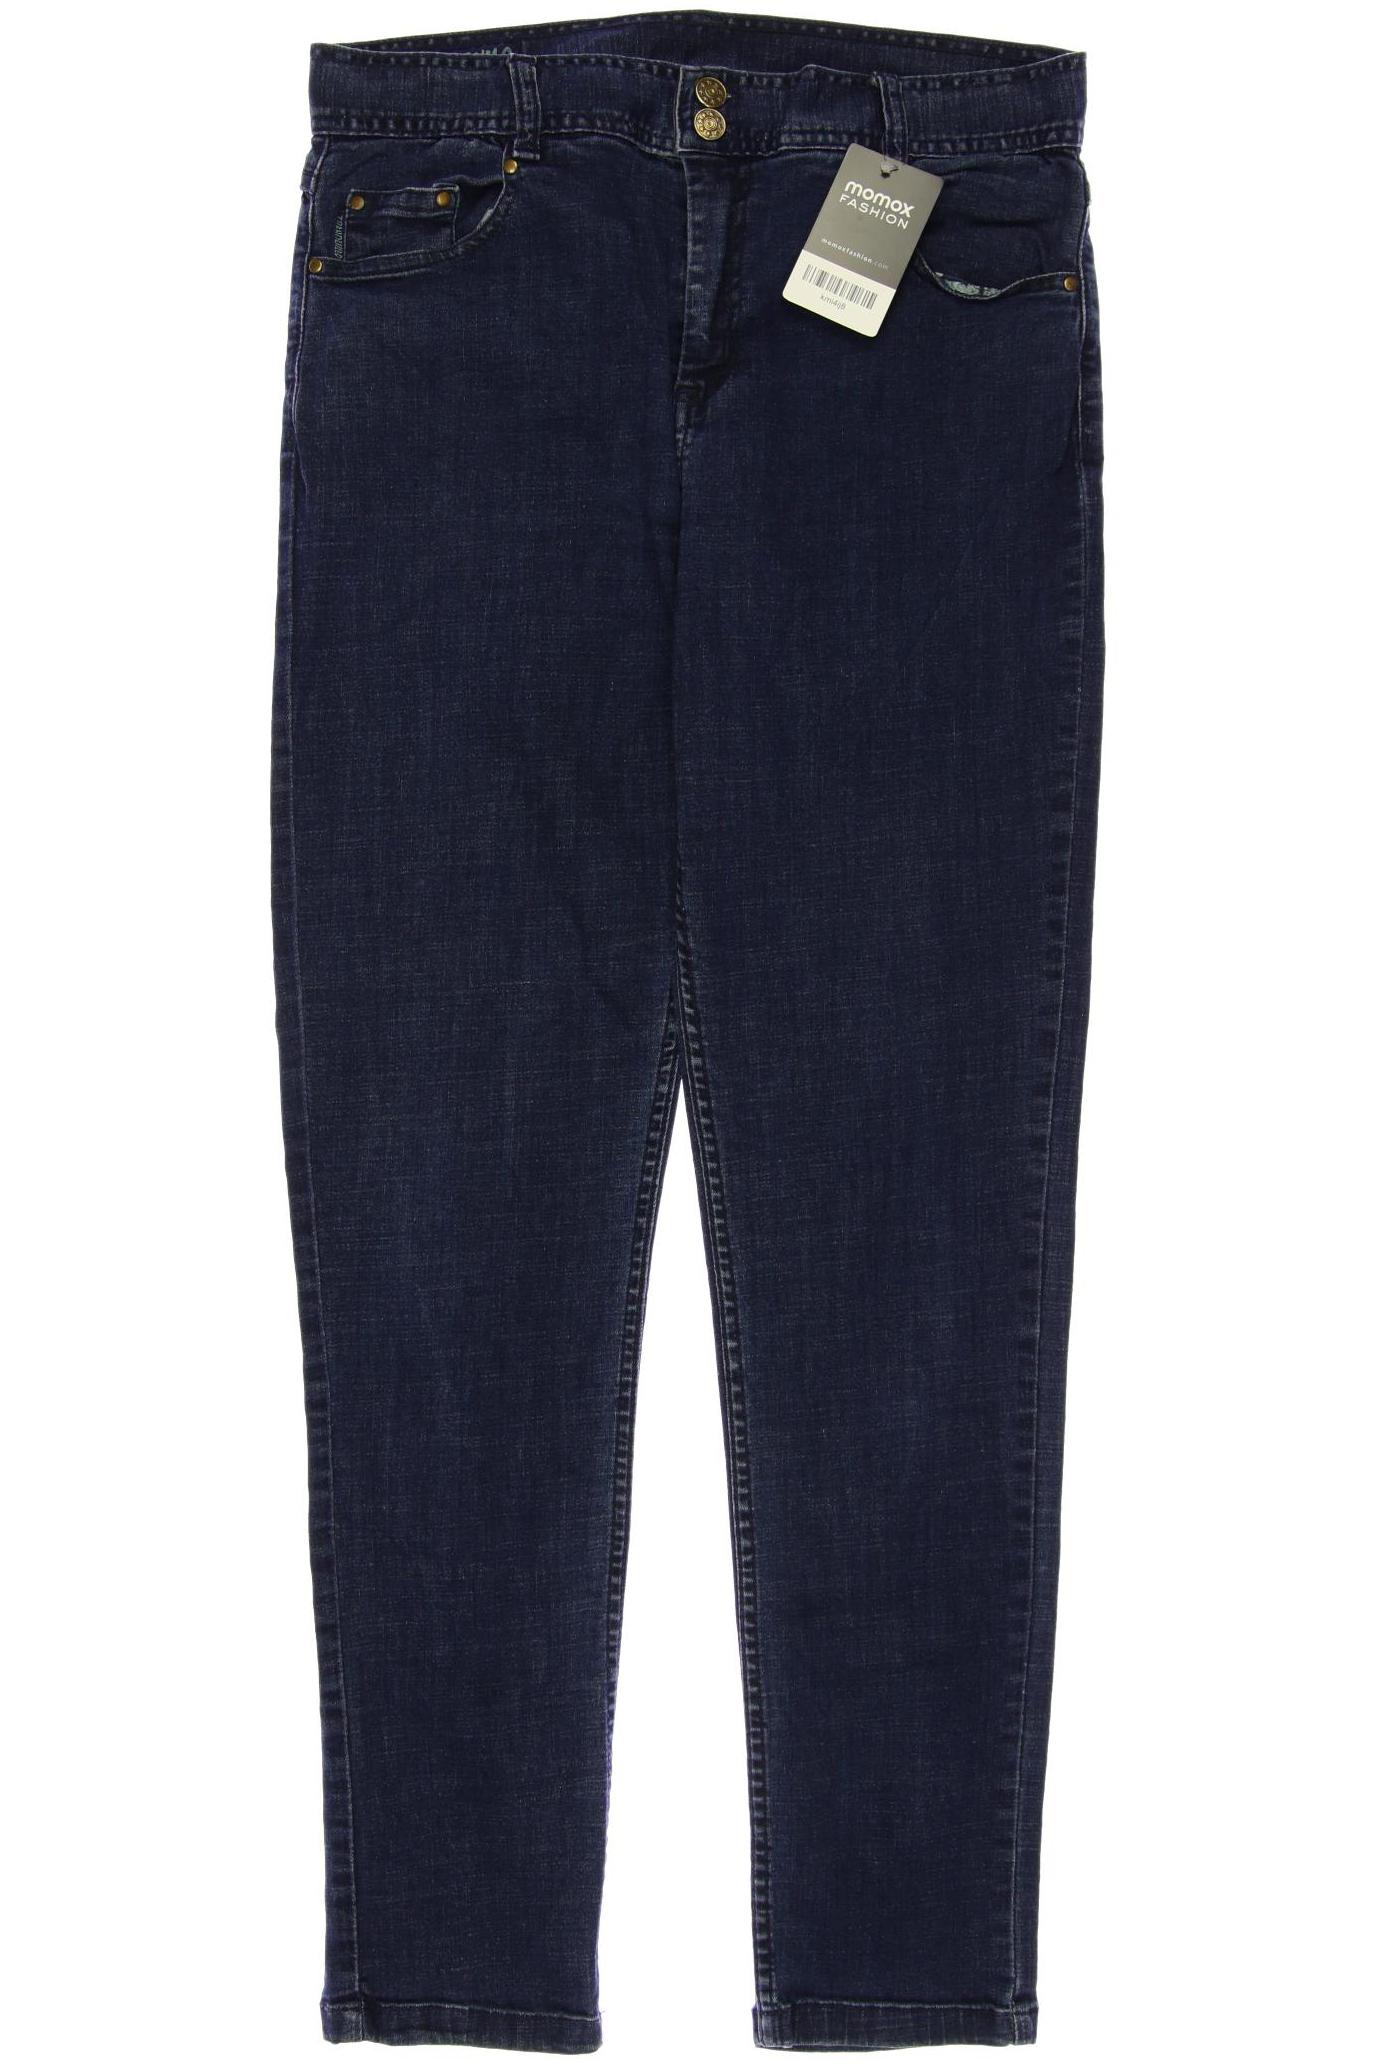 Tranquillo Damen Jeans, blau, Gr. 40 von TRANQUILLO